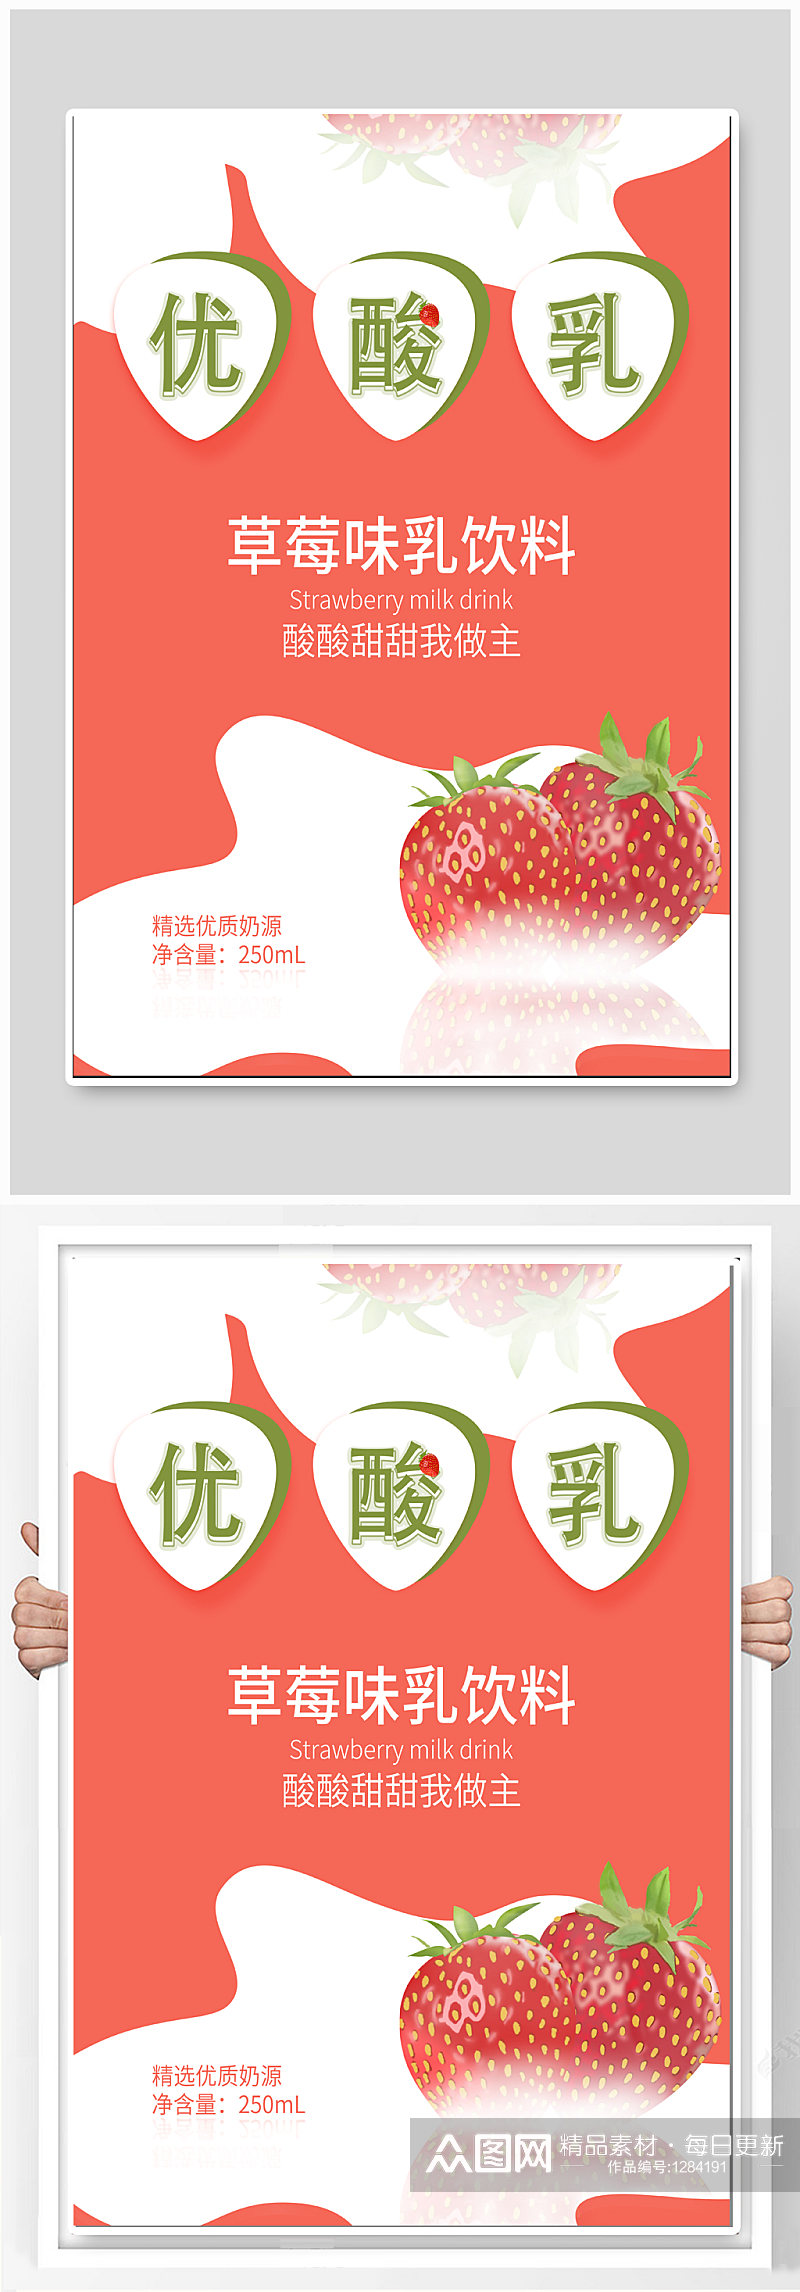 草莓味饮料饮品海报素材